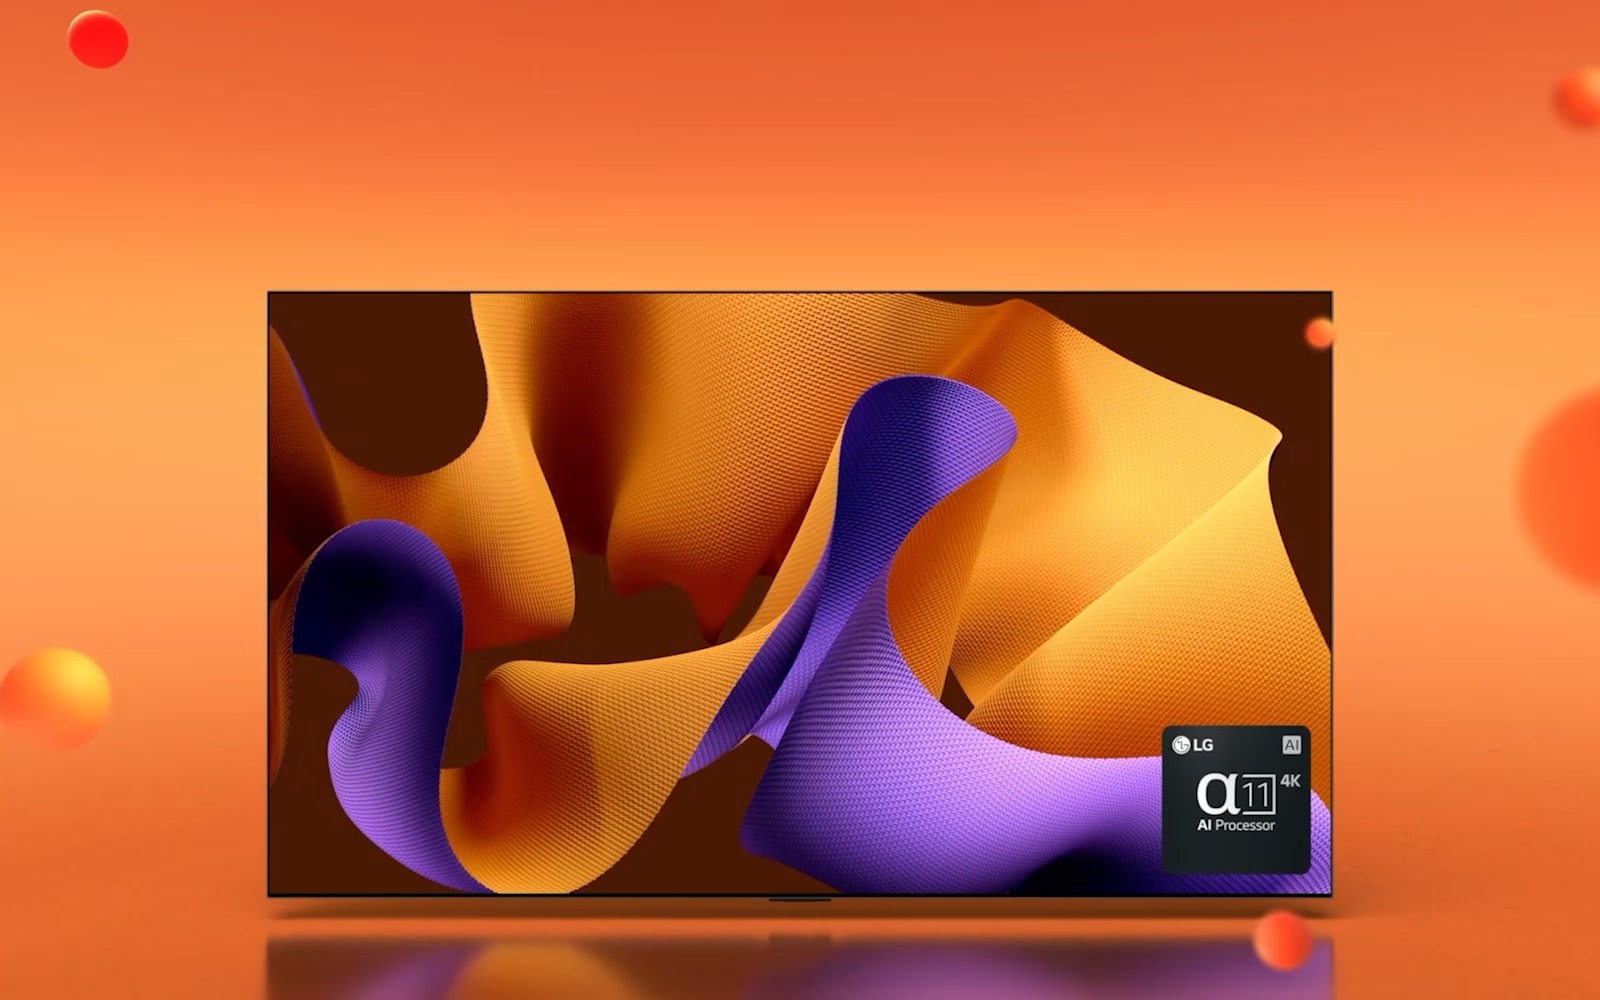 朝右 45 度角的 LG OLED G4，螢幕上有粉紅色與橘色抽象藝術作品，後面有著橘色背景和 3D 球體映襯，OLED 電視旋轉面向前方。右下方是 LG alpha 11 AI 處理器的標誌。